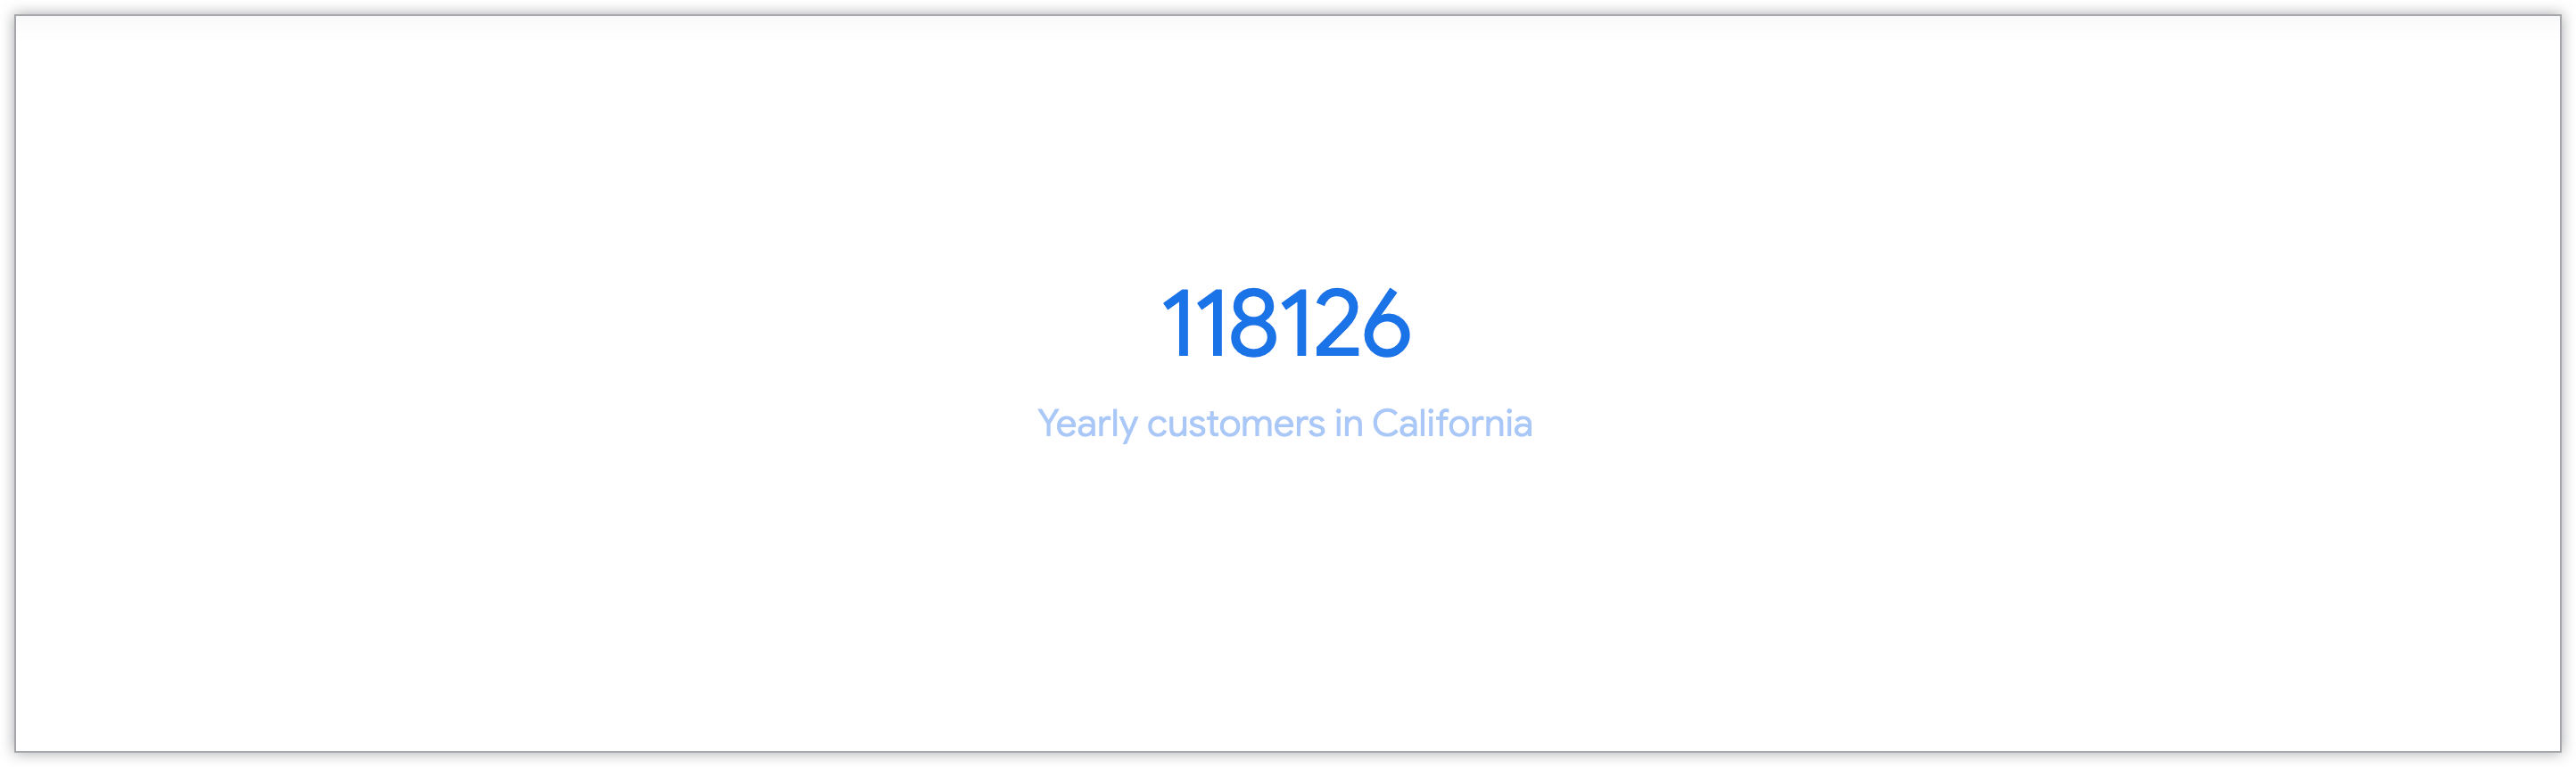 Einzelwertdiagramm, das die Anzahl der Kunden aus Kalifornien pro Jahr zeigt.